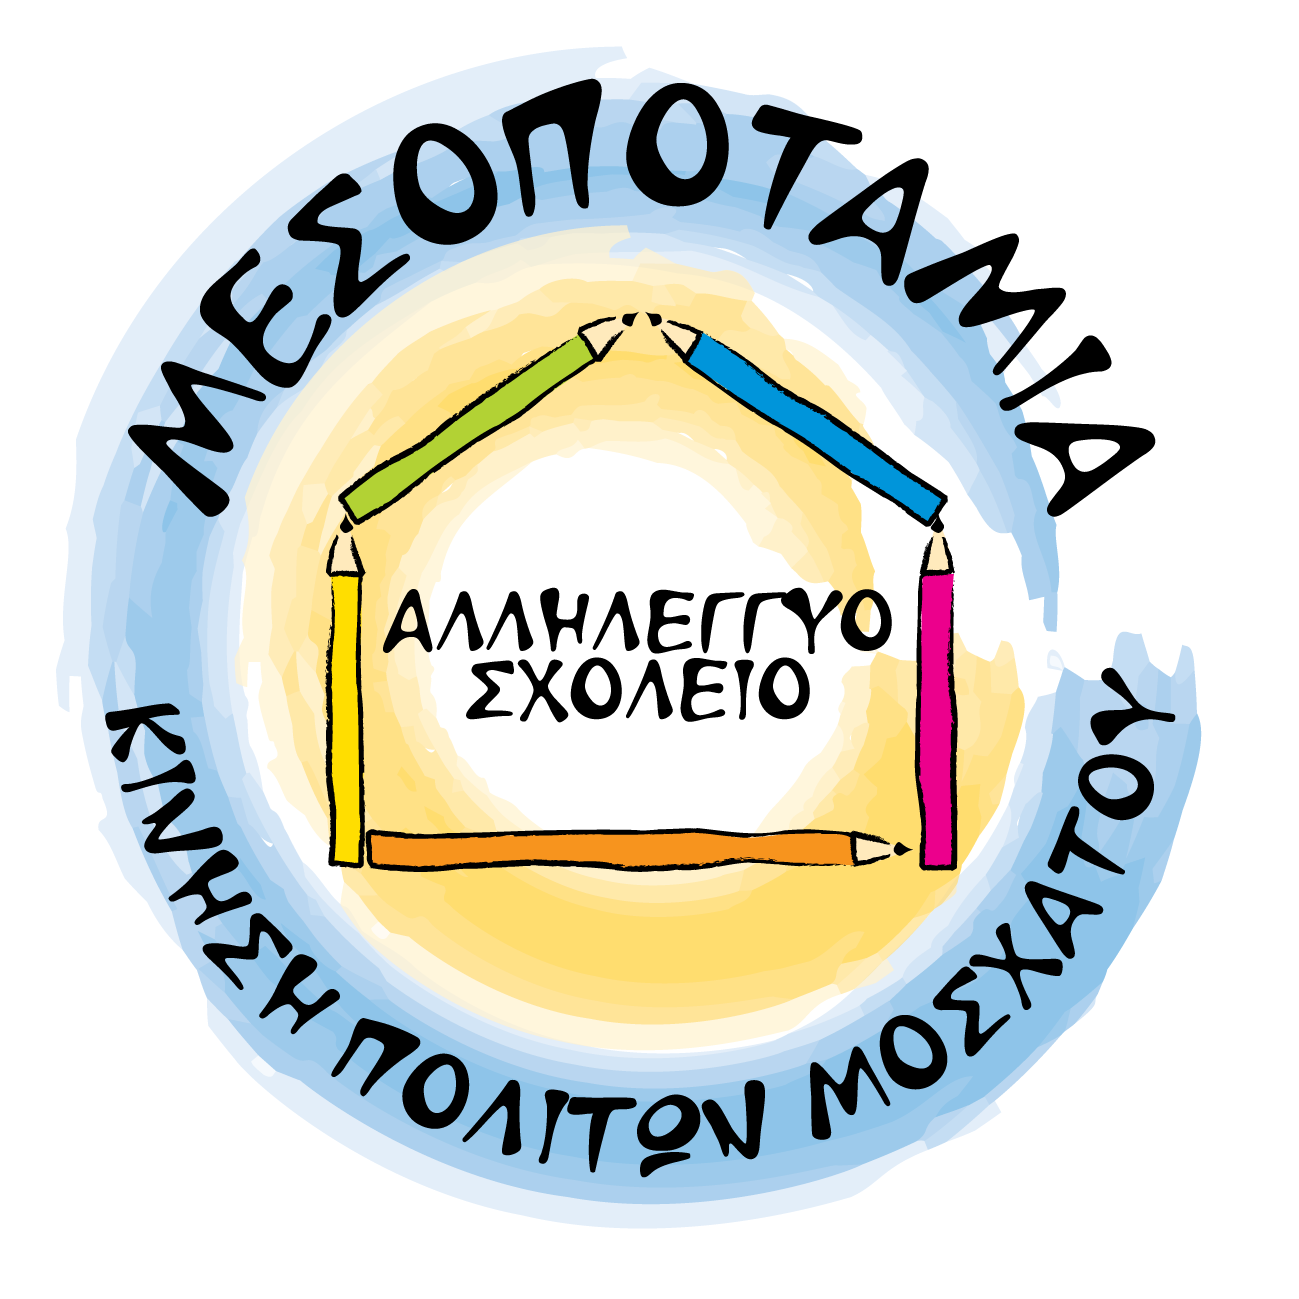 Αλληλέγγυο Σχολείο Μεσοποταμίας | Επικοινωνία logo